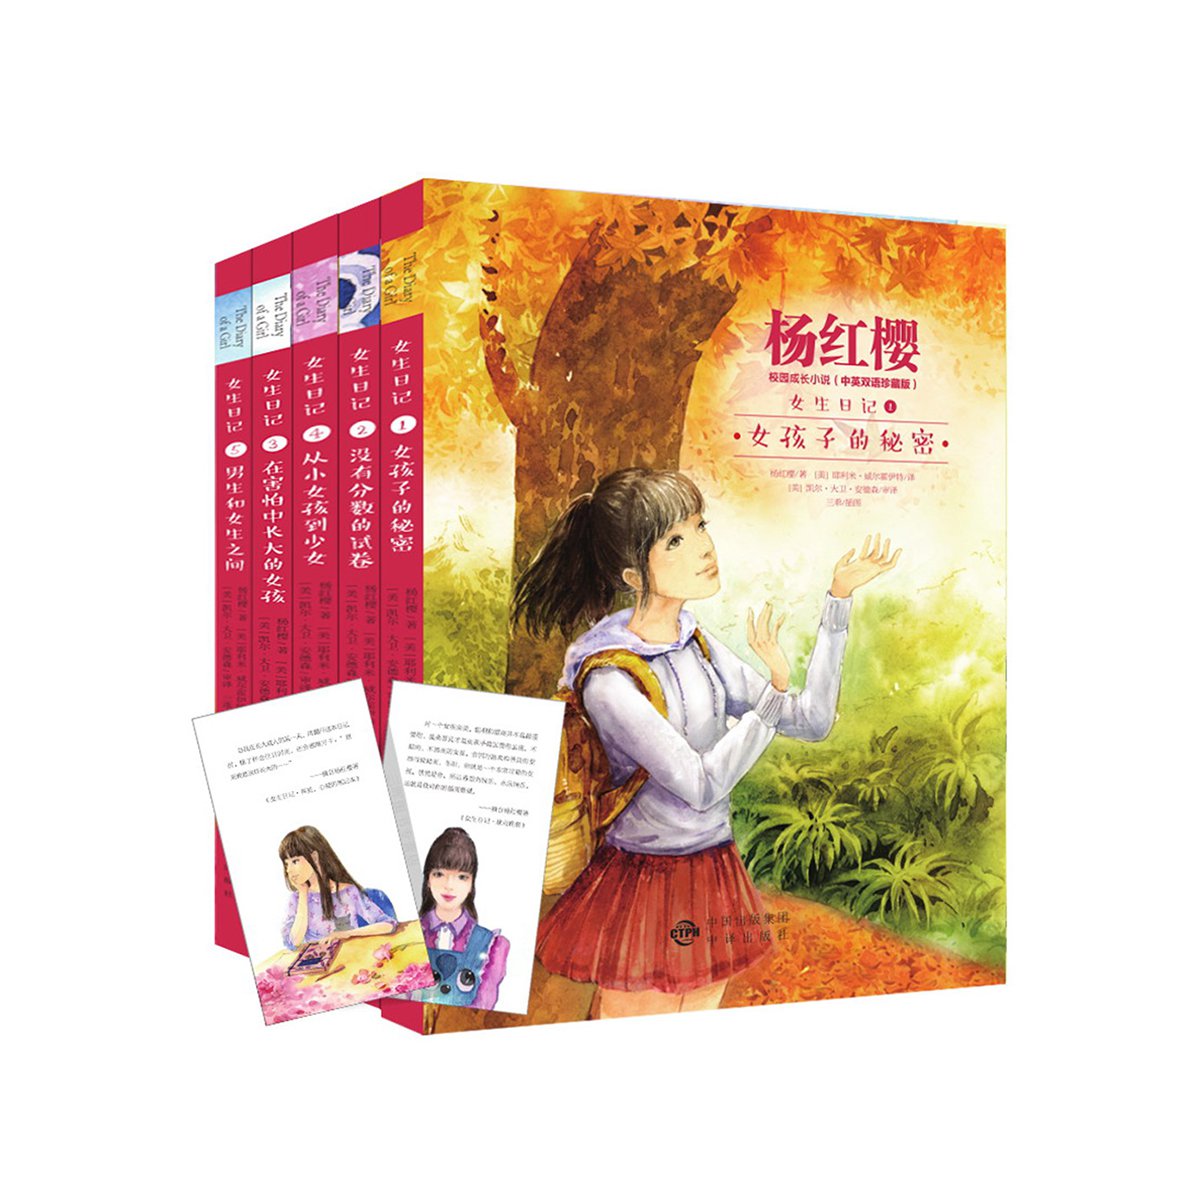 7-10岁 杨红樱女生日记1-5 共5册(女孩子的秘密 没有分数的试卷 在